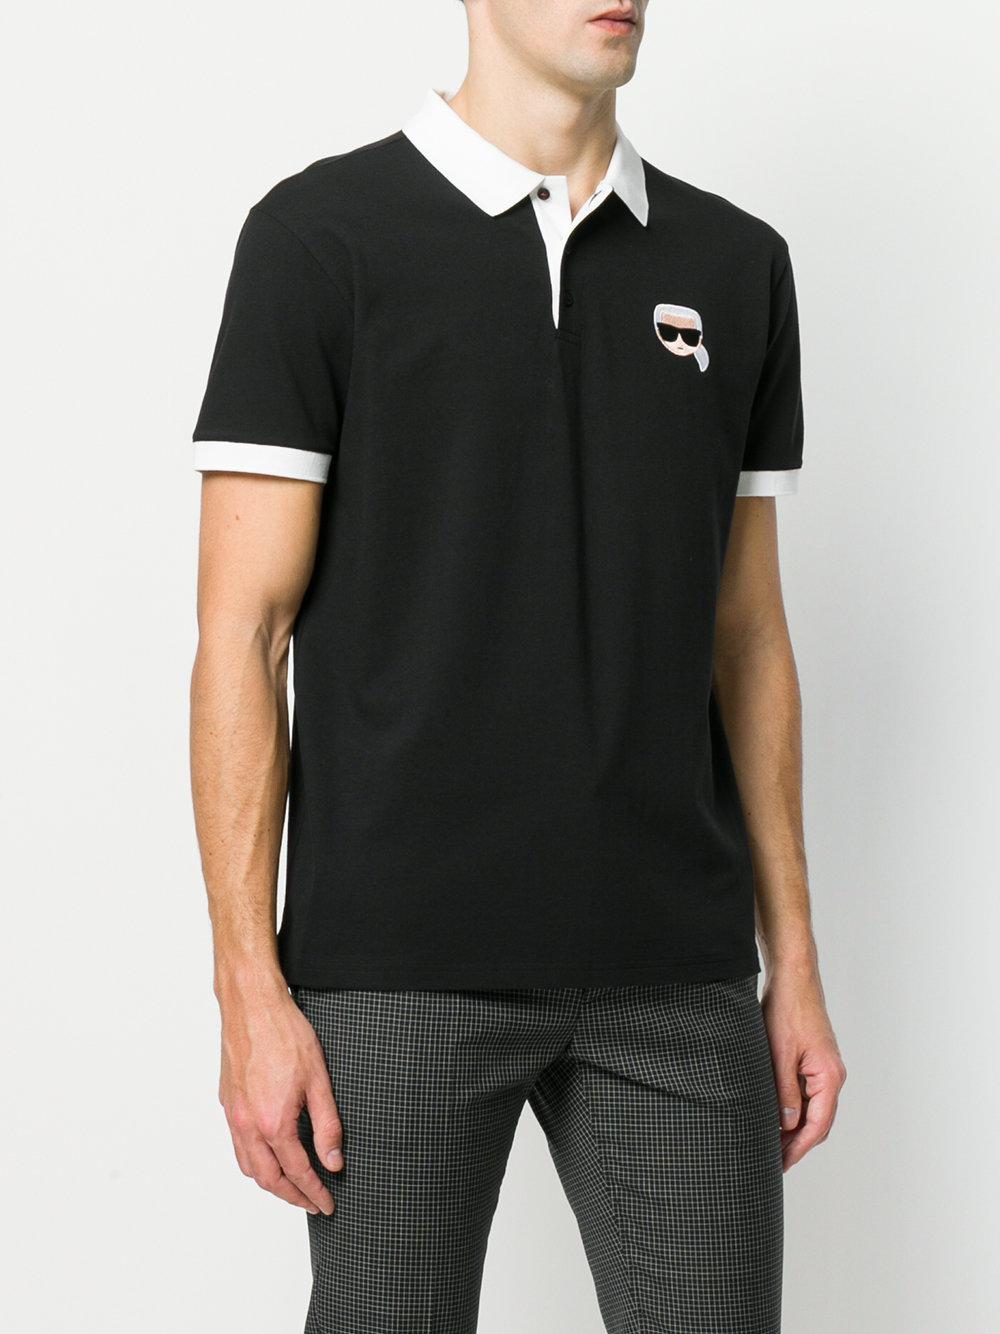 Karl Lagerfeld Karl Ikonik Polo Shirt in Black for Men - Lyst